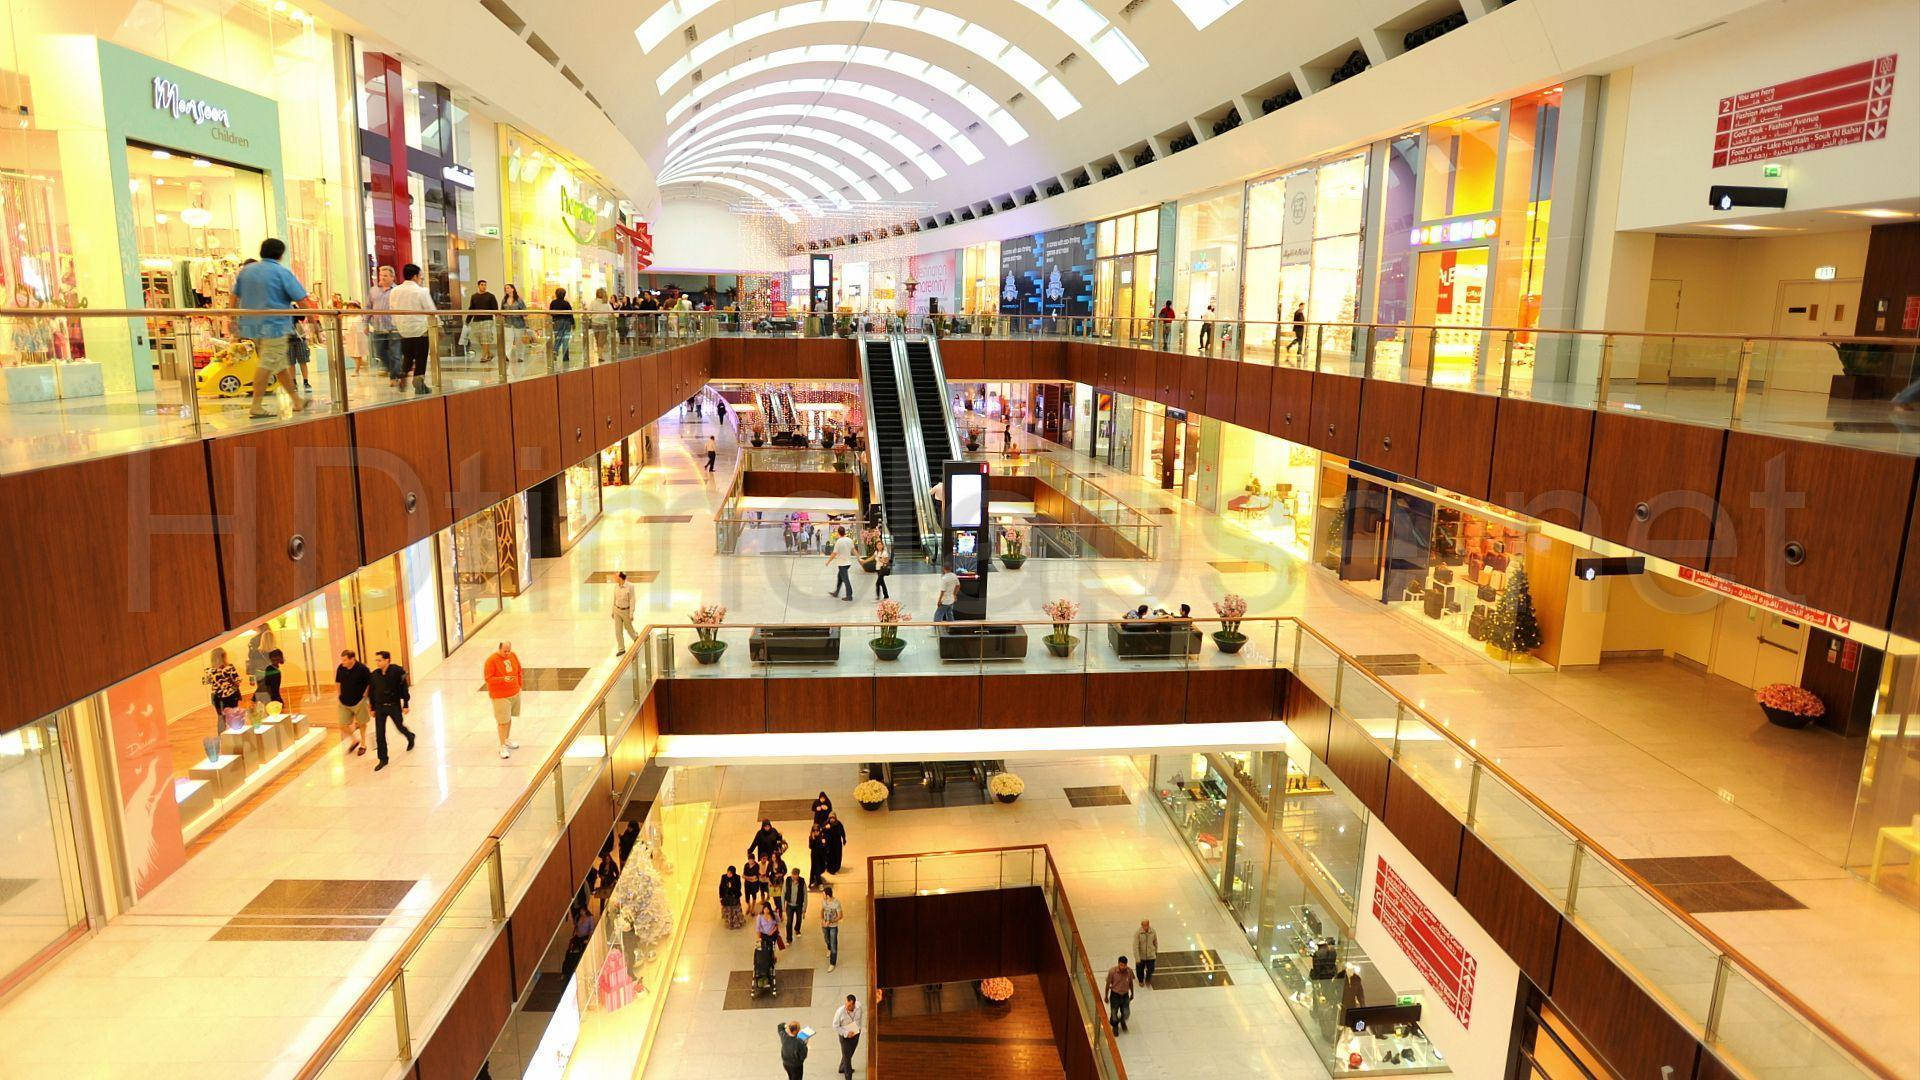 Malldubai Shopping Center - Mall Dubai Köpcentrum. Wallpaper